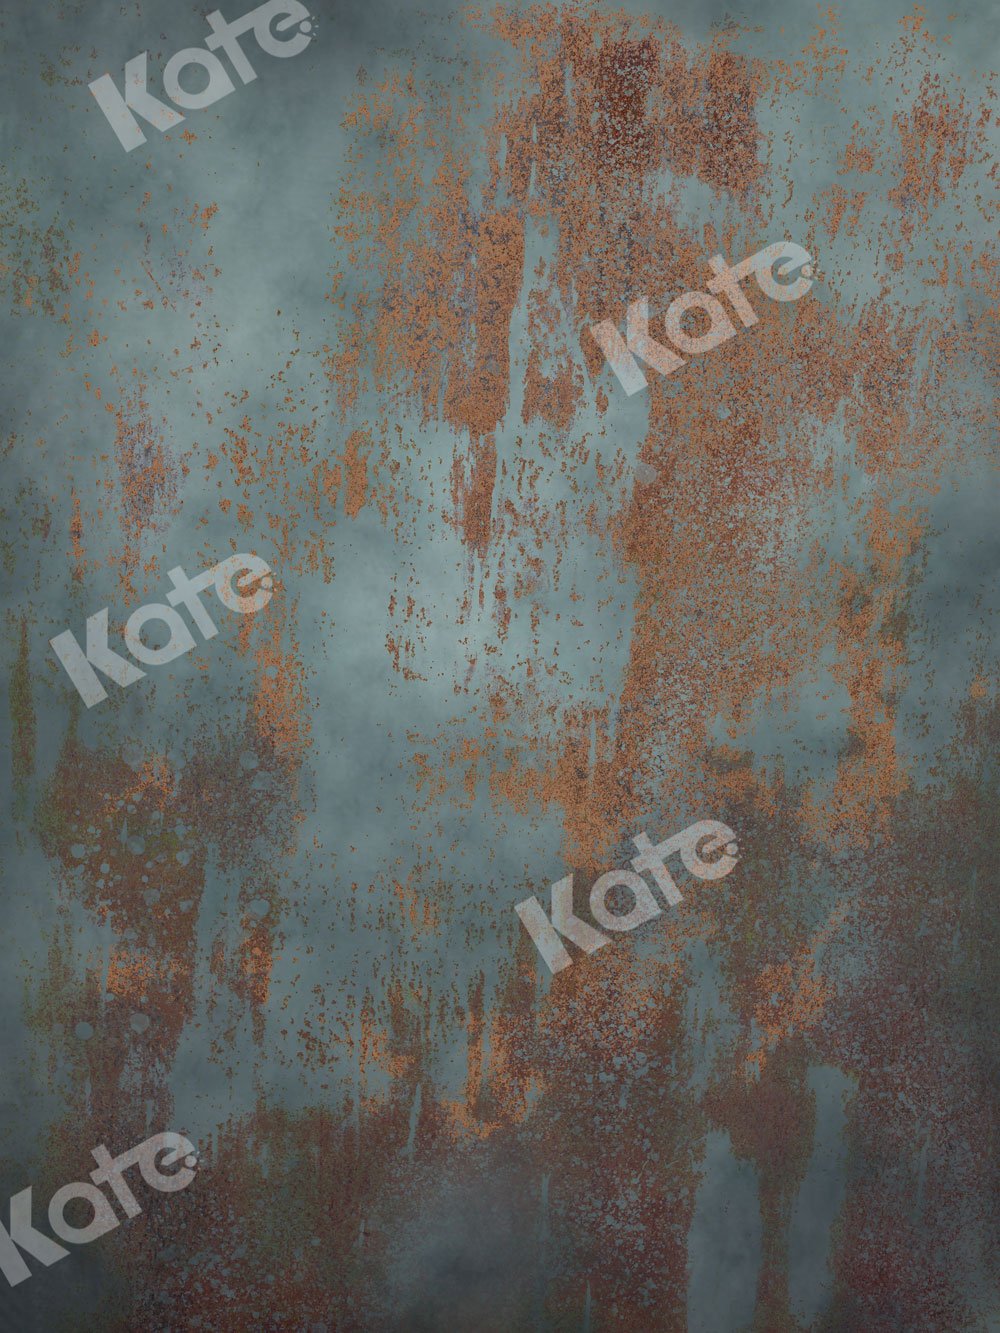 Kate Retrato Telón de fondo abstracto Oxidado Diseñado por JFCC